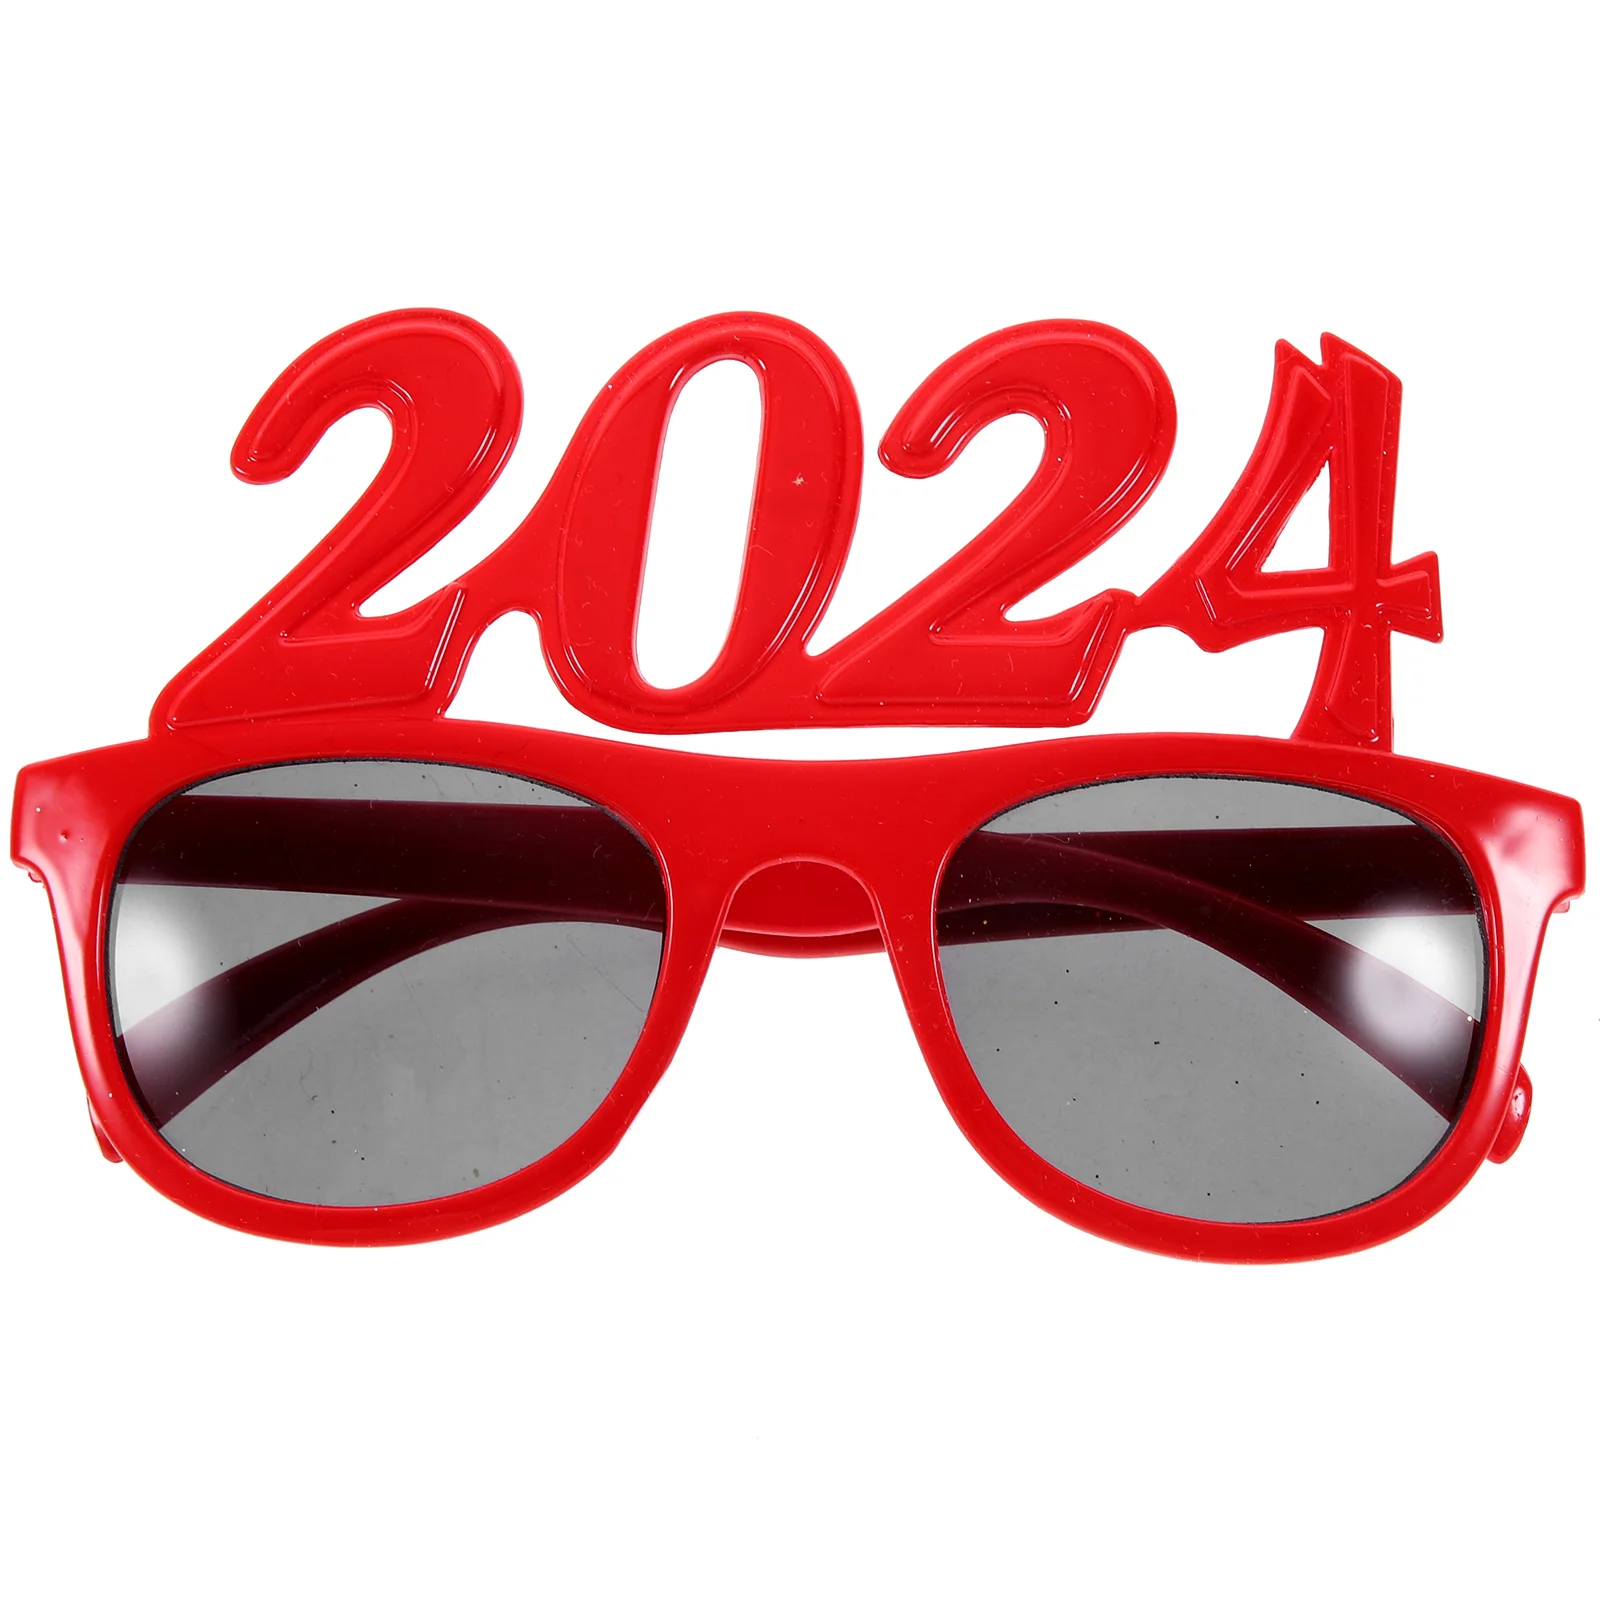 

2024 забавные очки, фотореквизит для мужчин и женщин в новом году